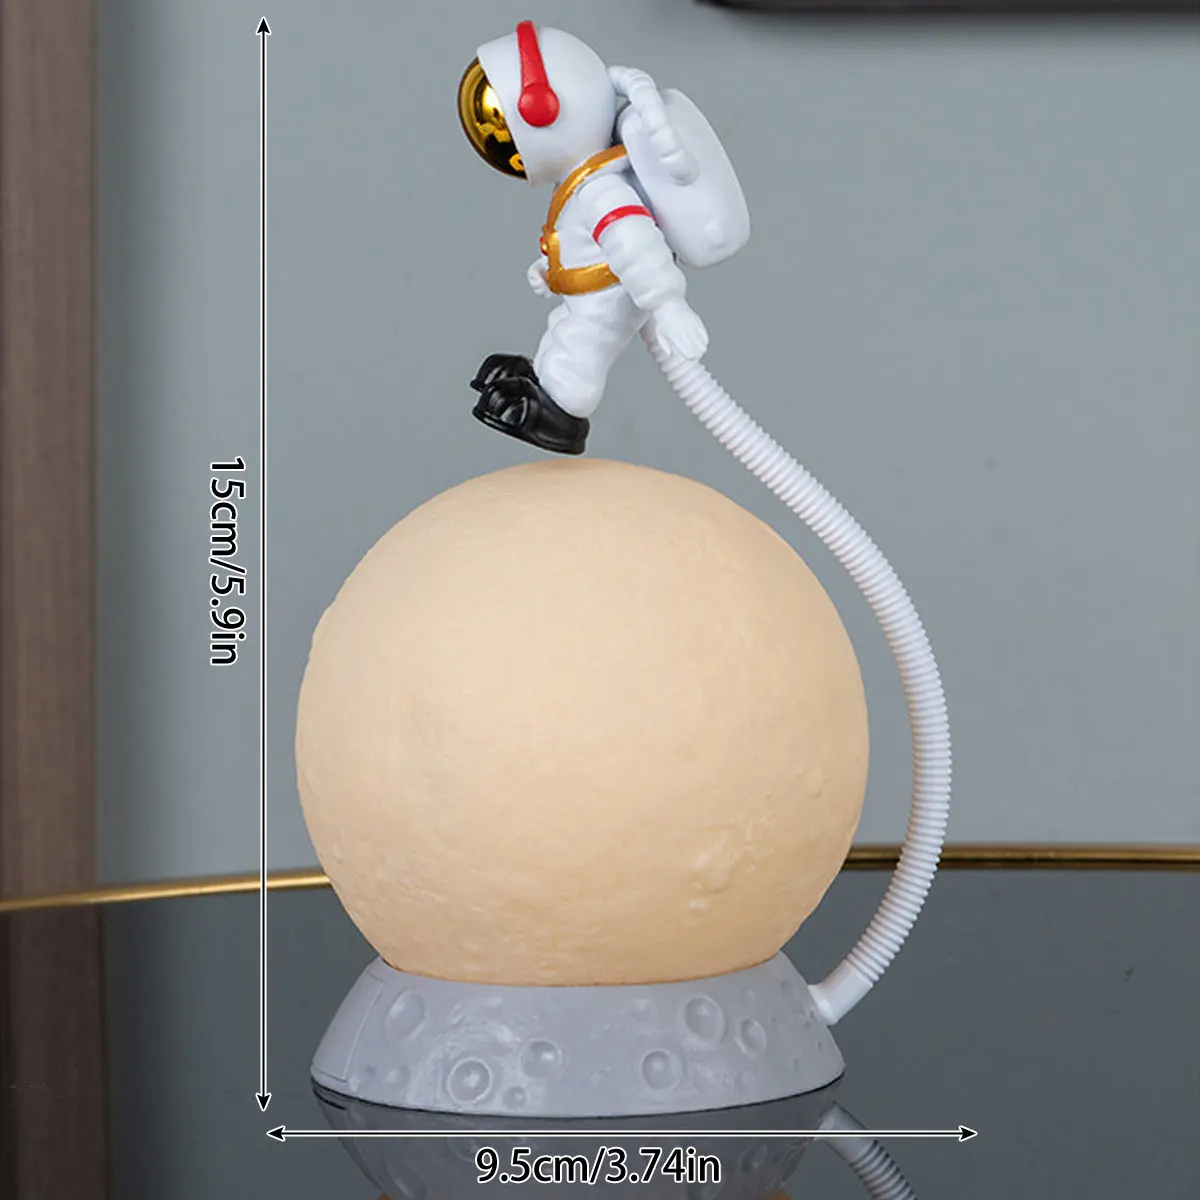 Astronaute 3d stéréo surround figurine rgb led lampe de nuit lévitation  magnétique sans fil Bluetooth haut-parleur flottant de soutien Tf Card